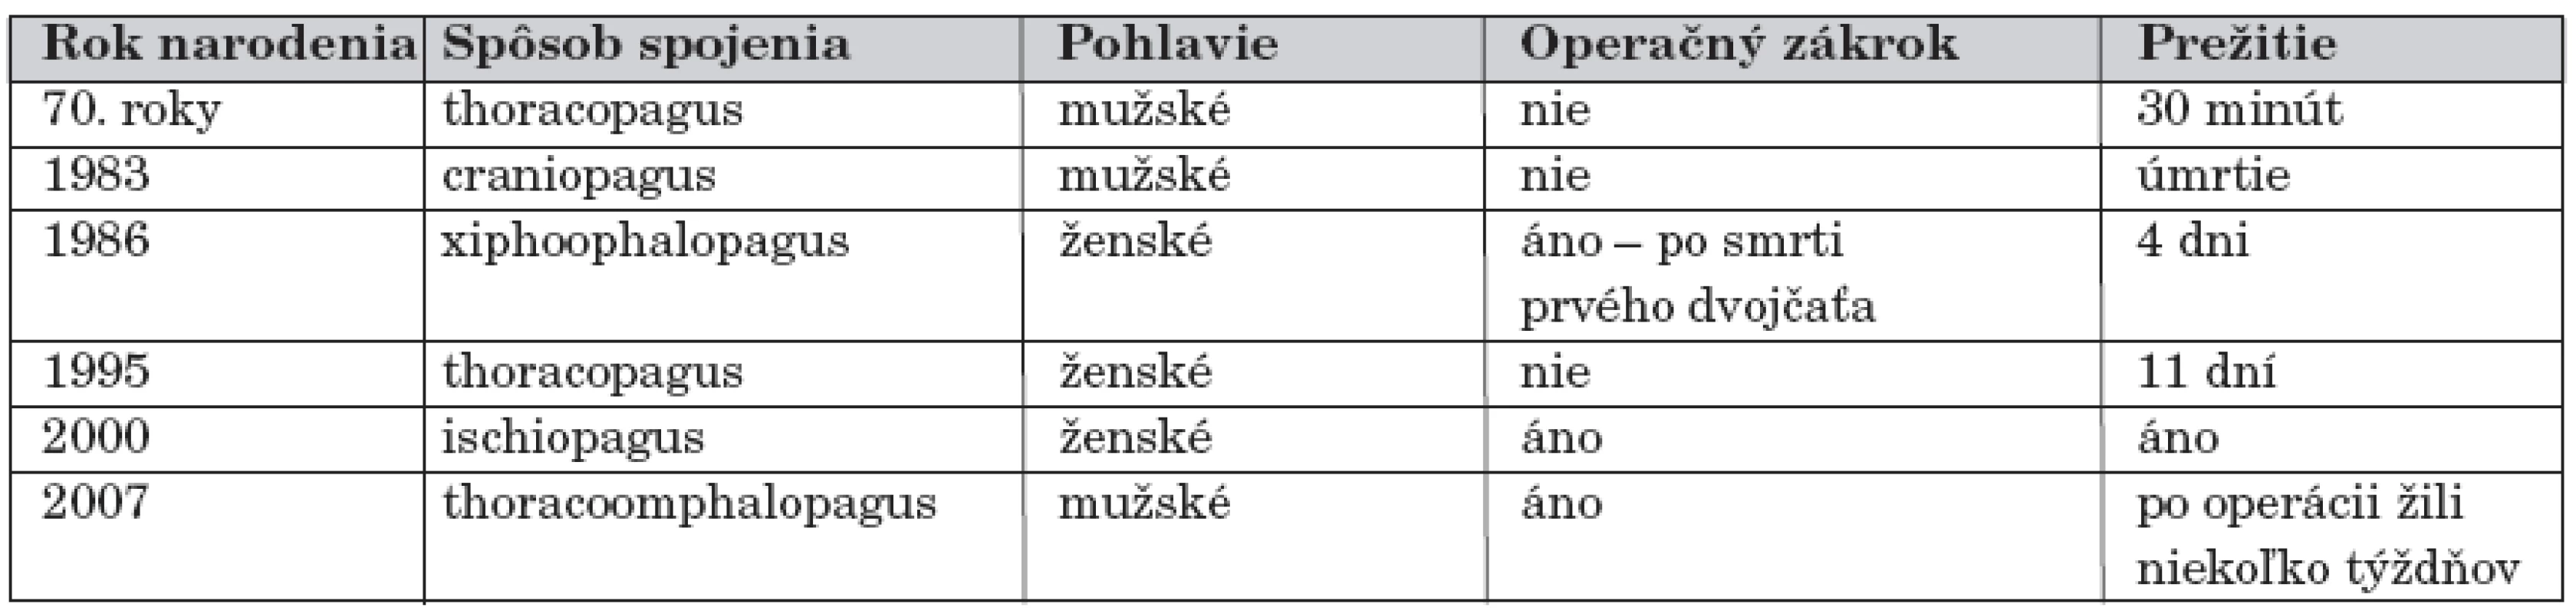 Prehľad známych prípadov spojených dvojčiat na Slovensku od roku 1960.